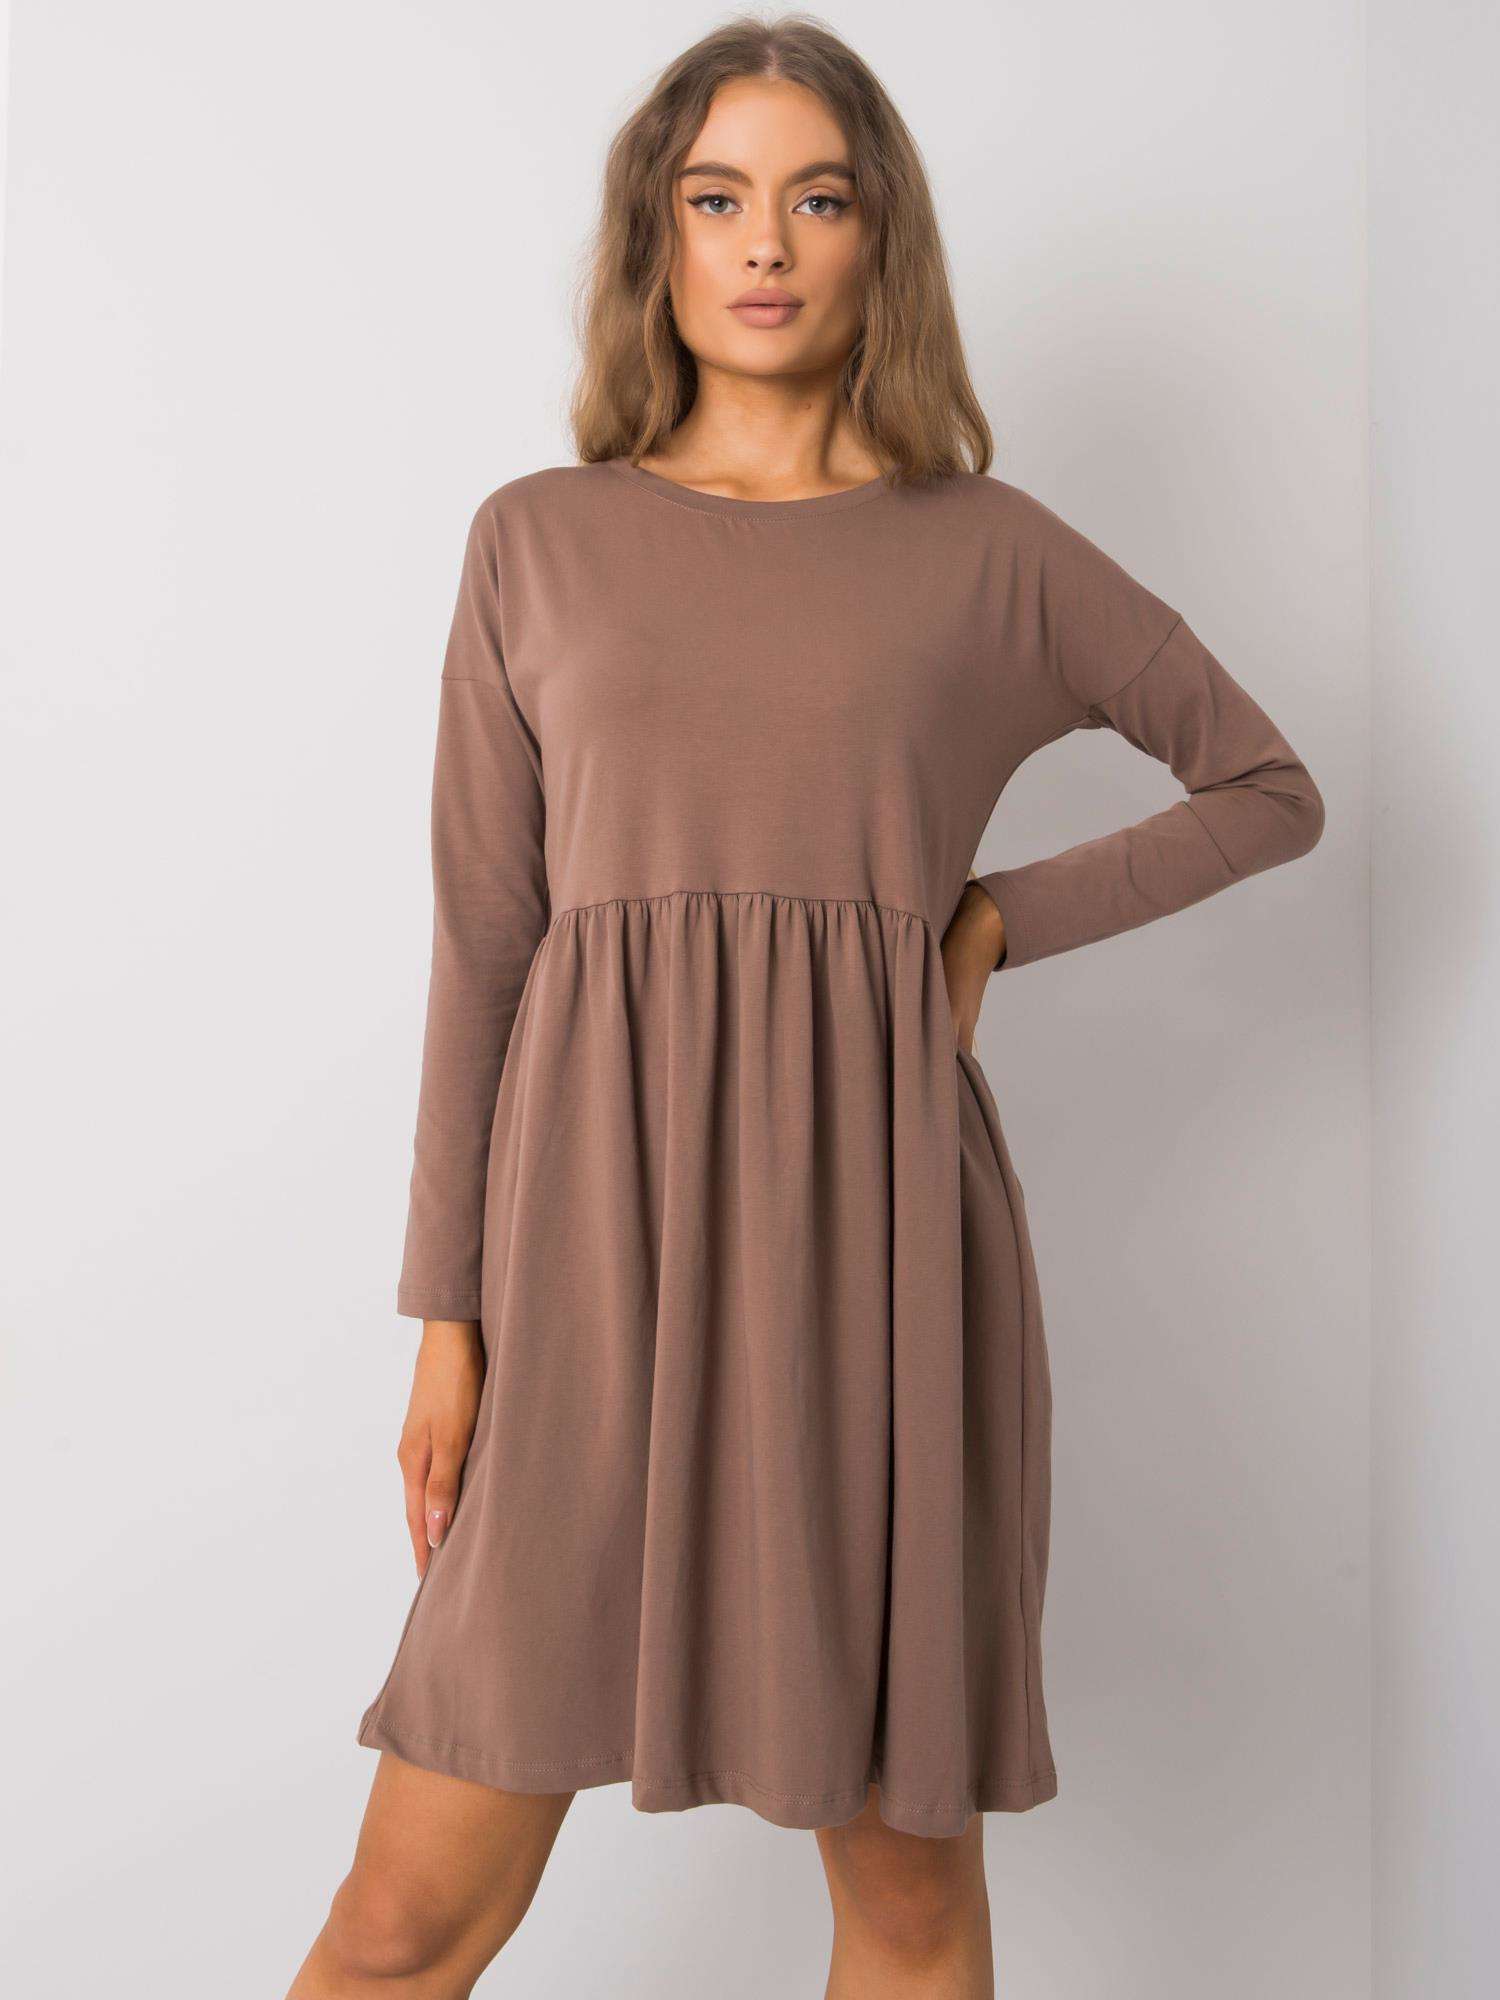 Hnědé dámské šaty s dlouhými rukávy RV-SK-5889.41P-coffe Velikost: M